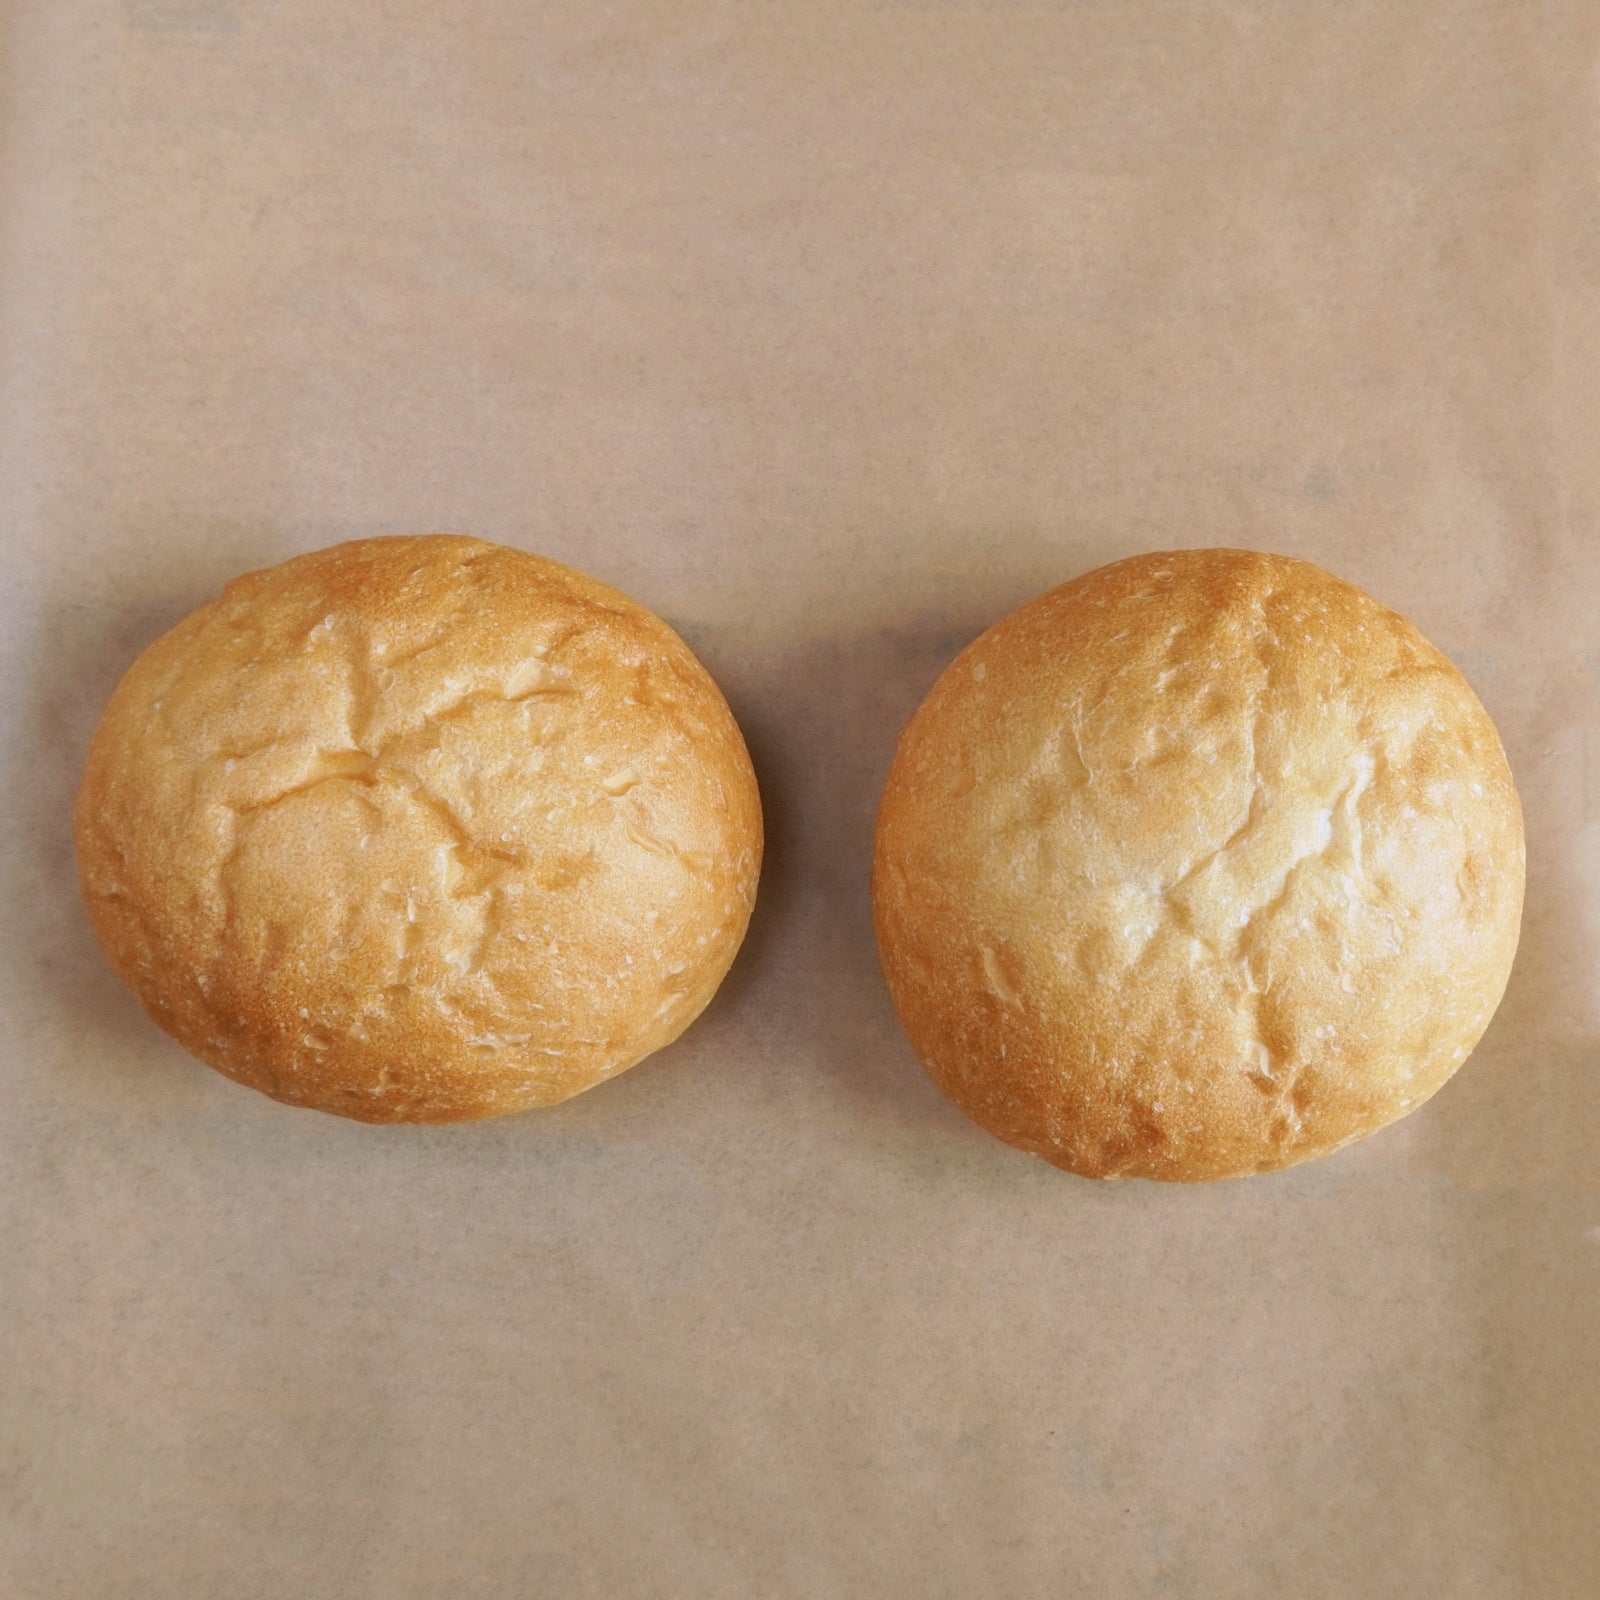 無添加 バーガー バンズ ゴマなし パン 卵不使用 乳製品不使用 国産 (2個) ホライズンファームズ